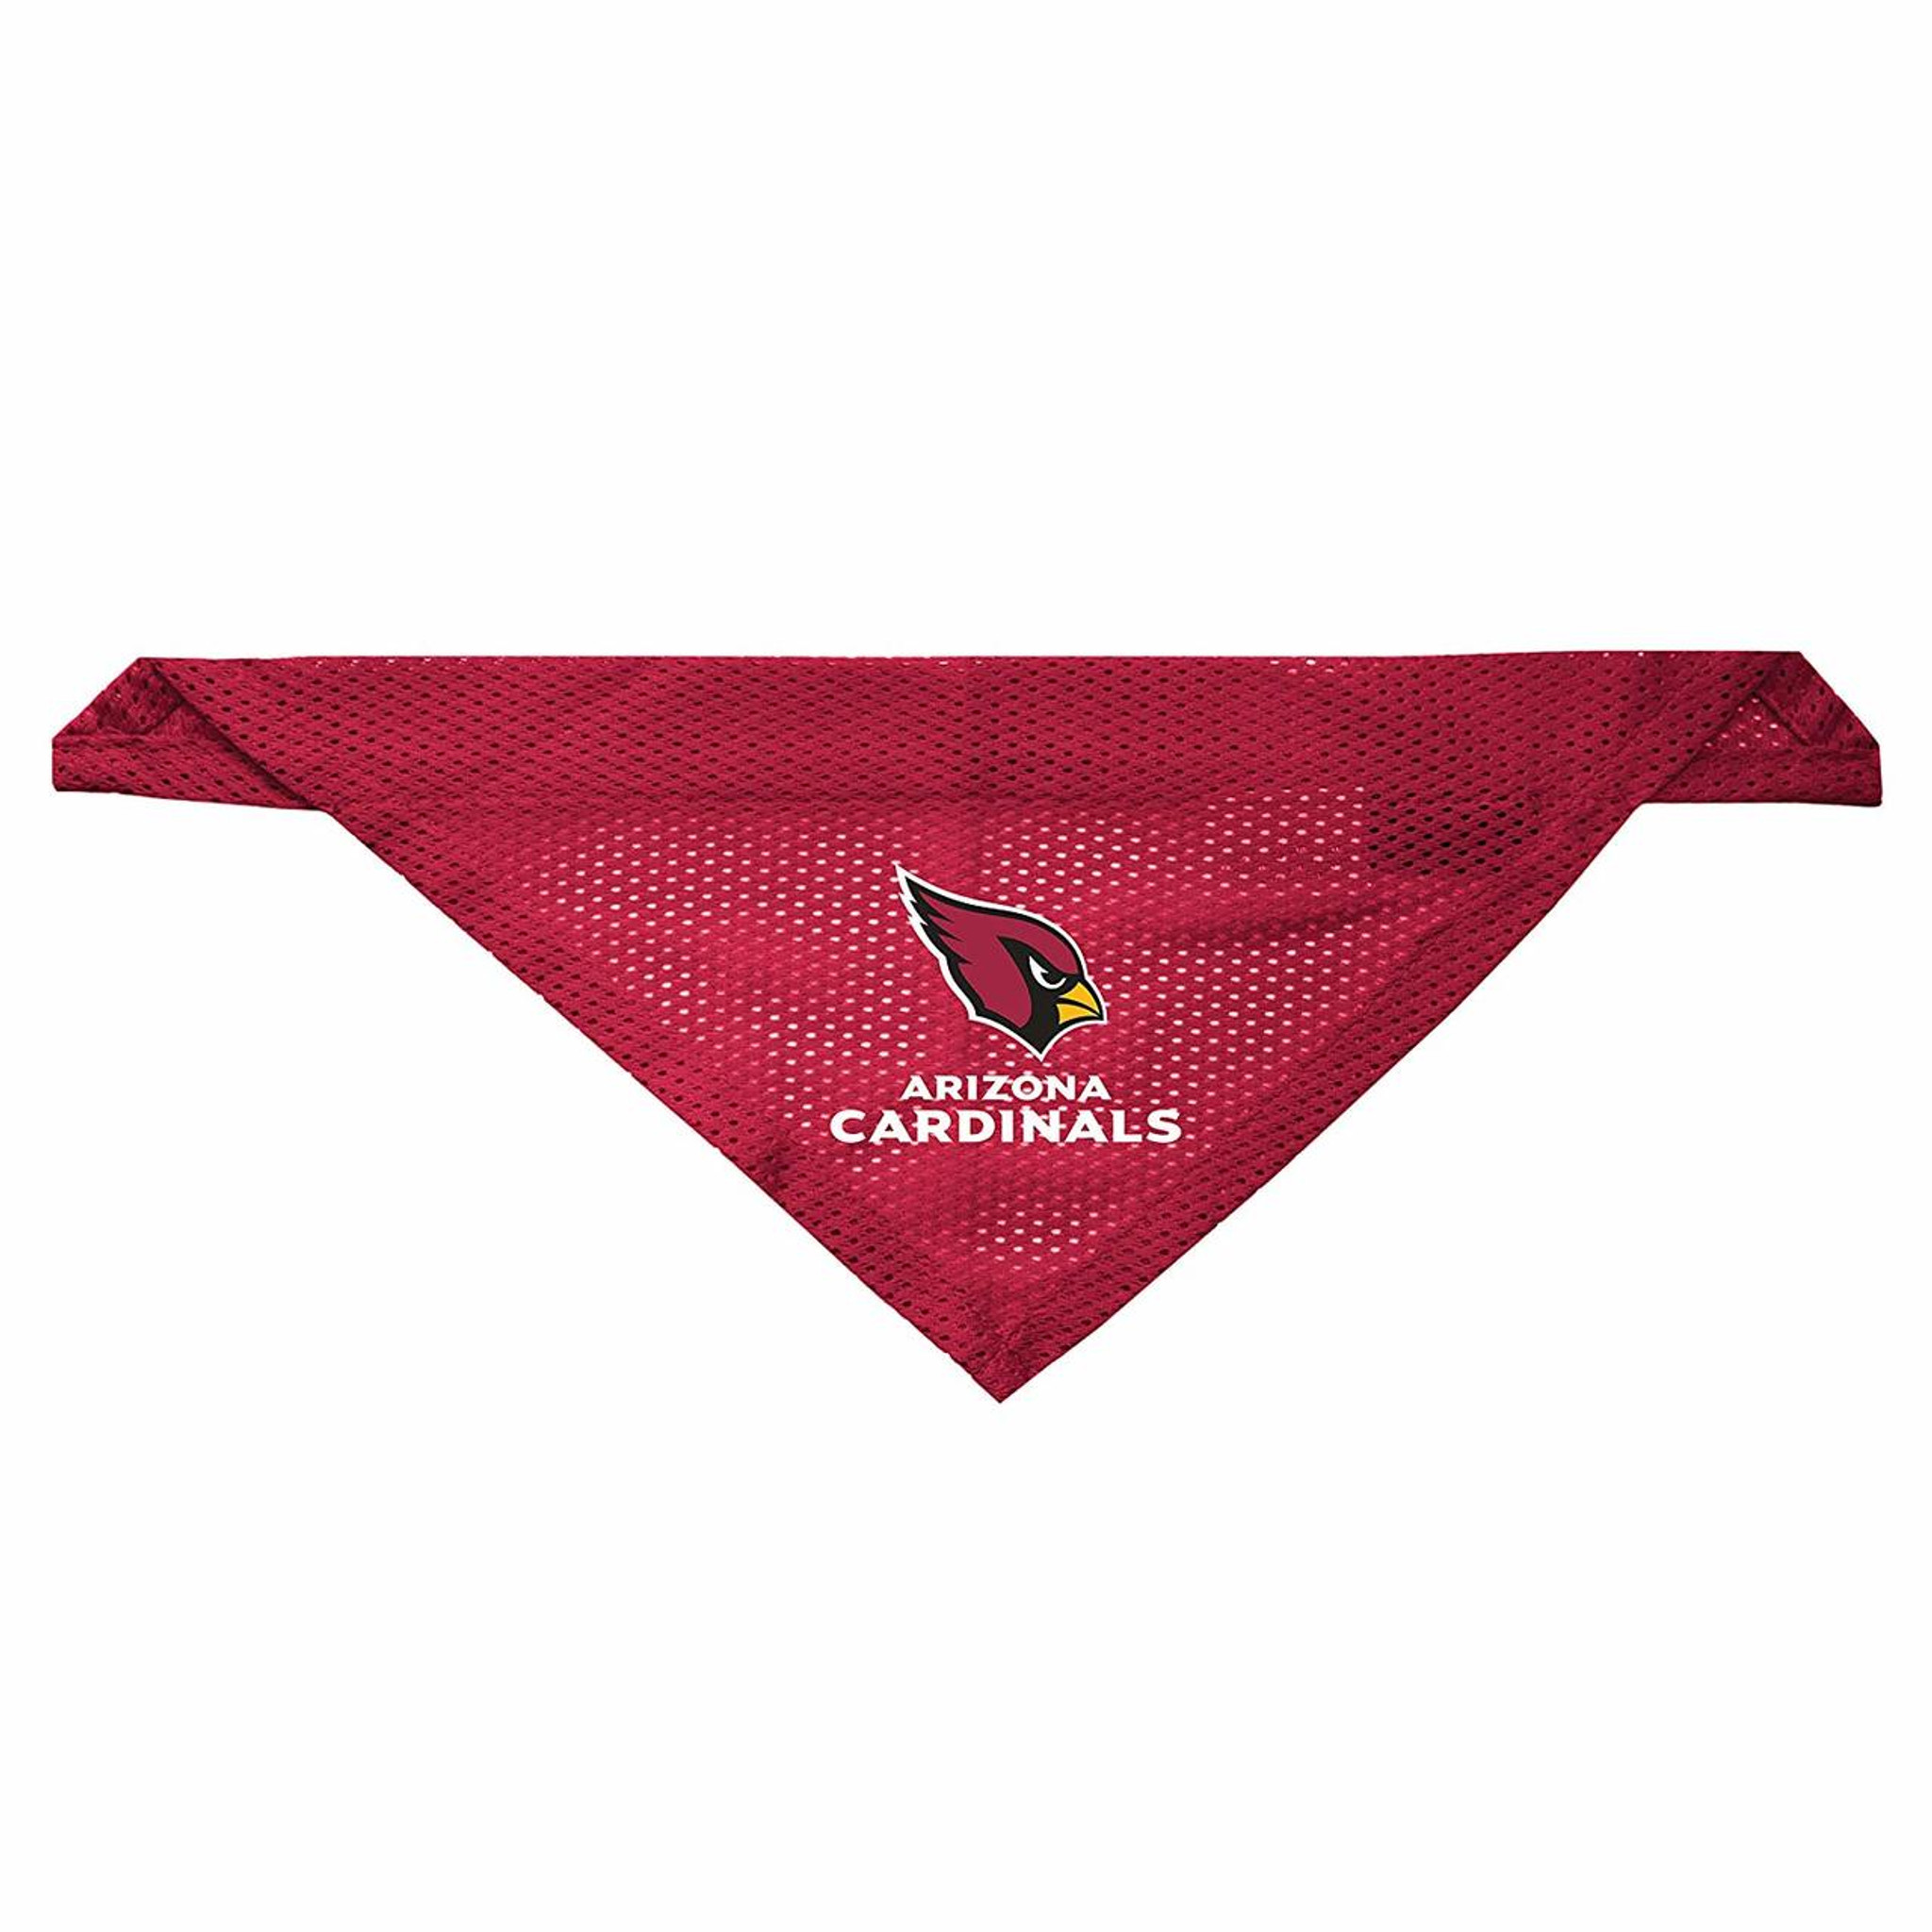 Arizona Cardinals Pet Jersey